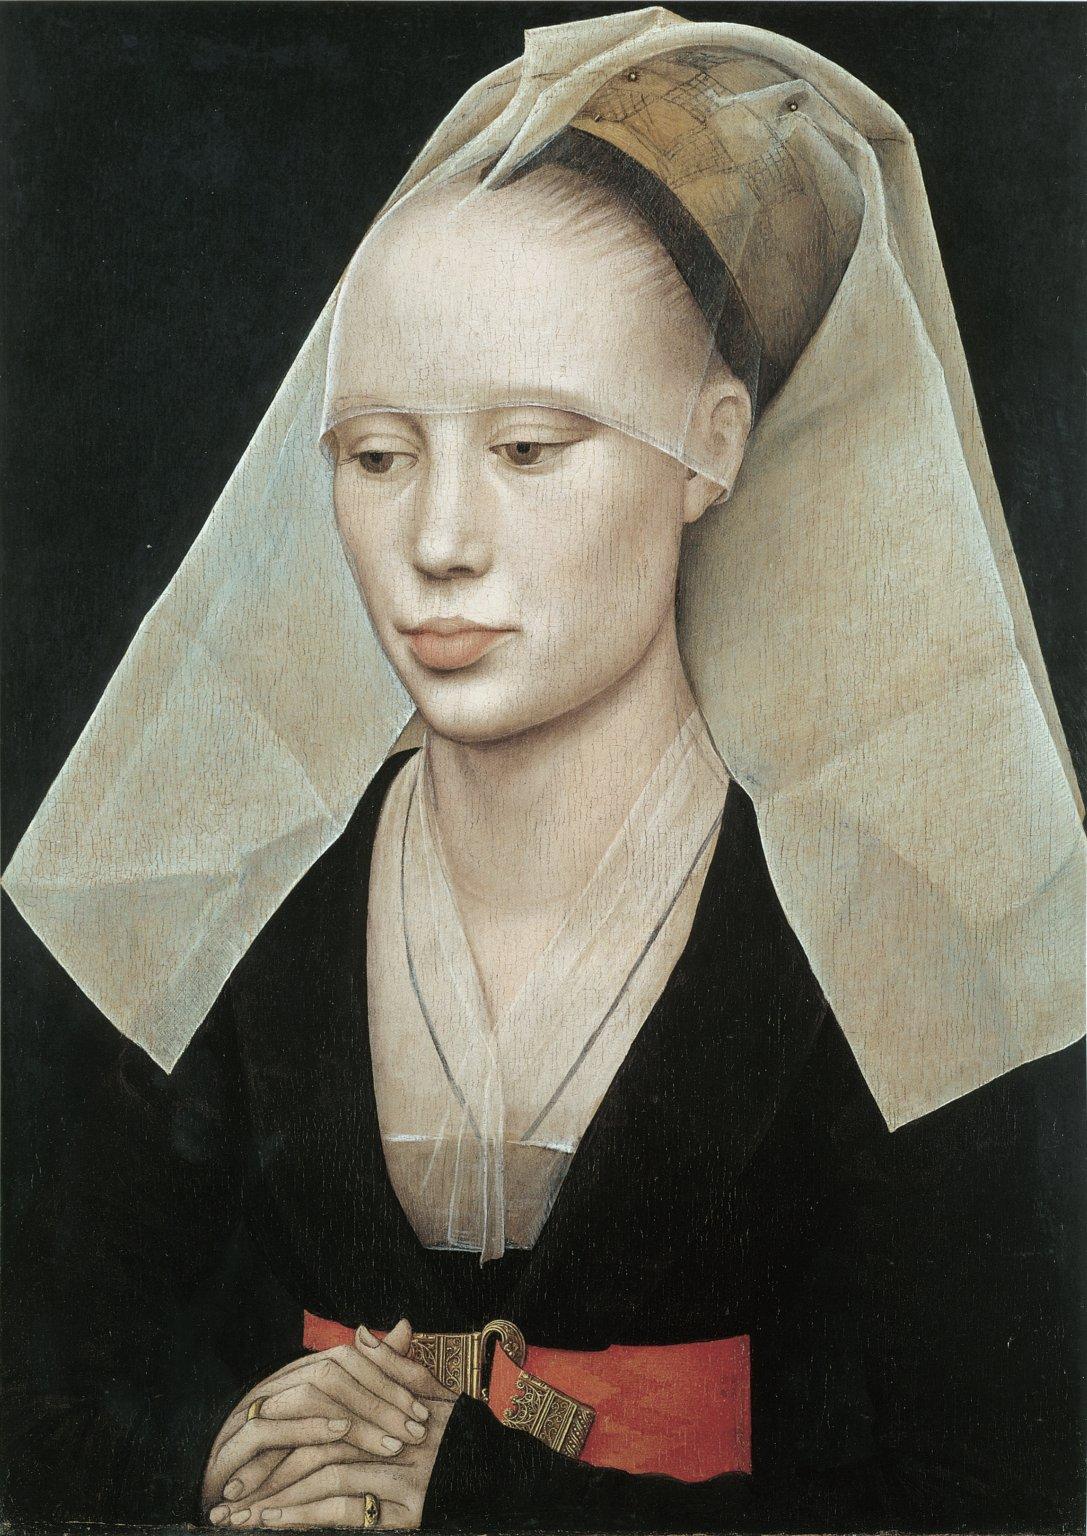 Porträt einer Dame by Rogier van der Weyden - circa 1455 - 37 x 27 cm National Gallery of Art